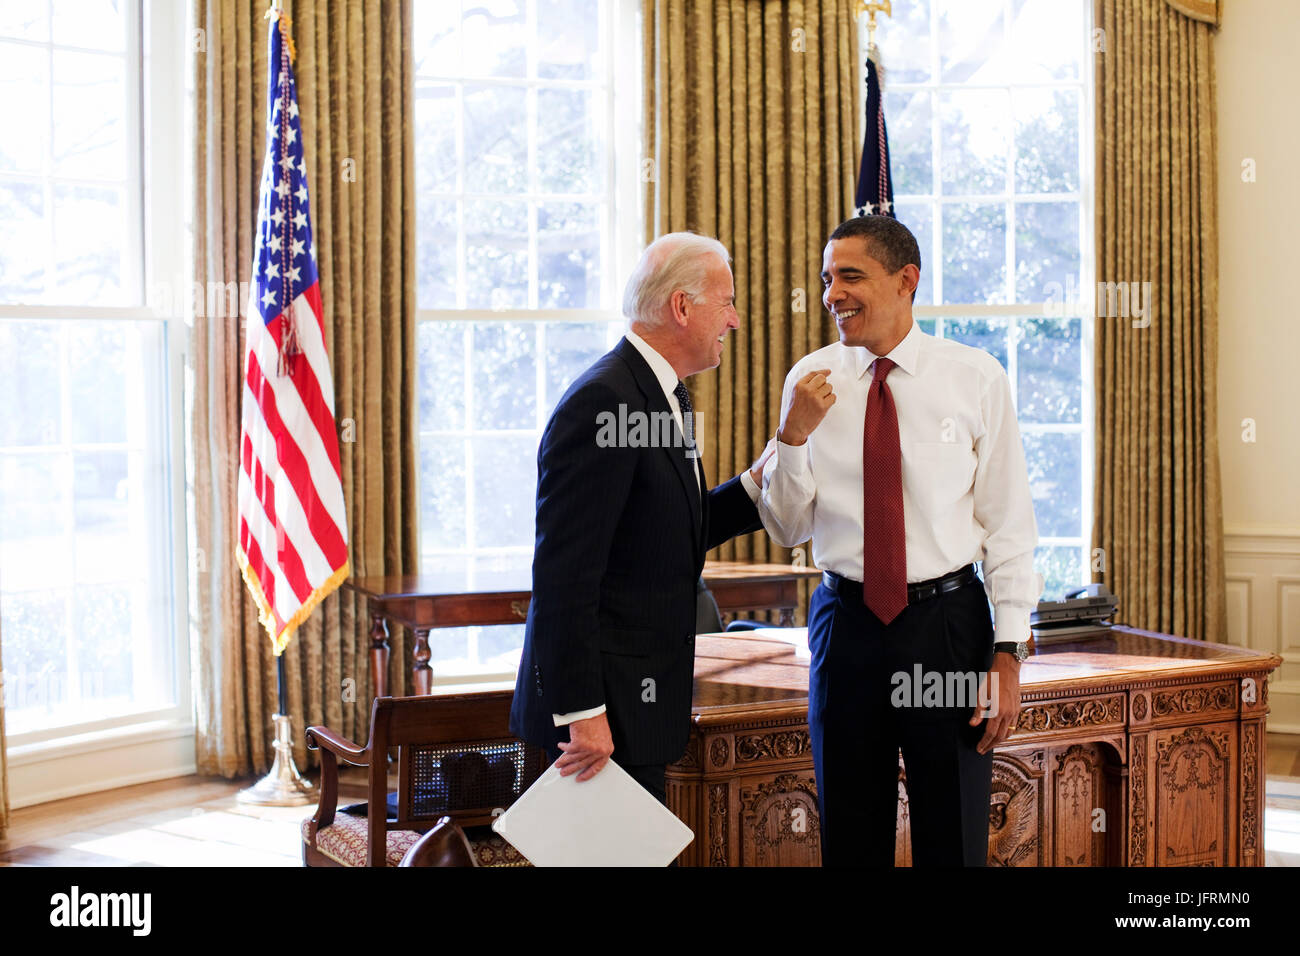 Le président Barack Obama et le Vice-président Joe Biden rire ensemble dans le bureau ovale, 1/22/09. Photo Officiel de la Maison Blanche par Pete Souza Banque D'Images